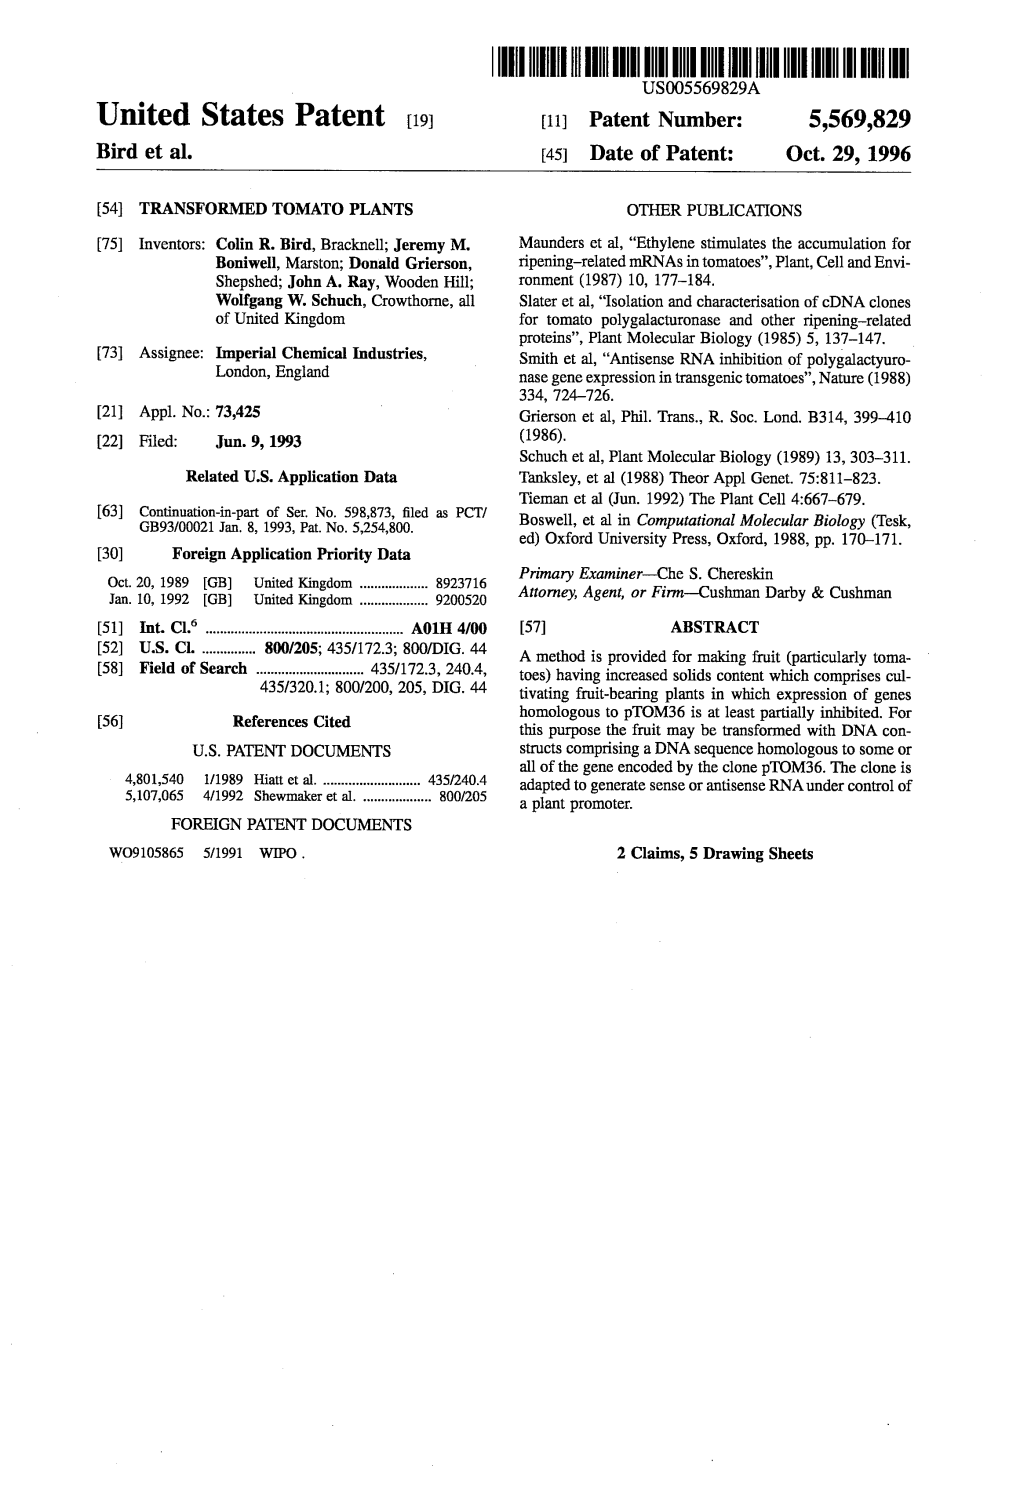 United States Patent (19) 11 Patent Number: 5,569,829 Bird Et Al